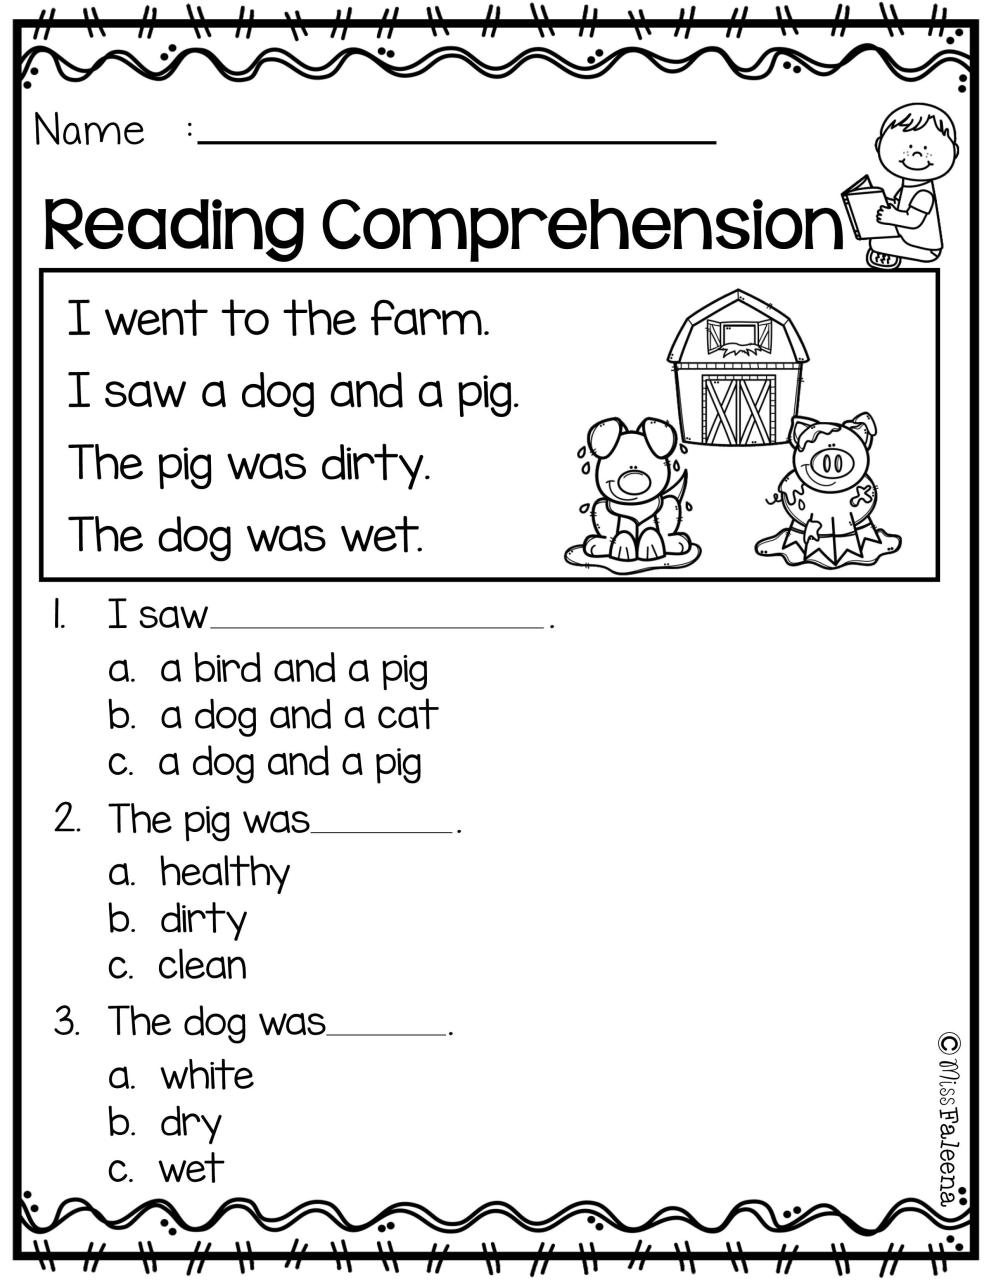 Free Reading Comprehension Worksheets For Kindergarten